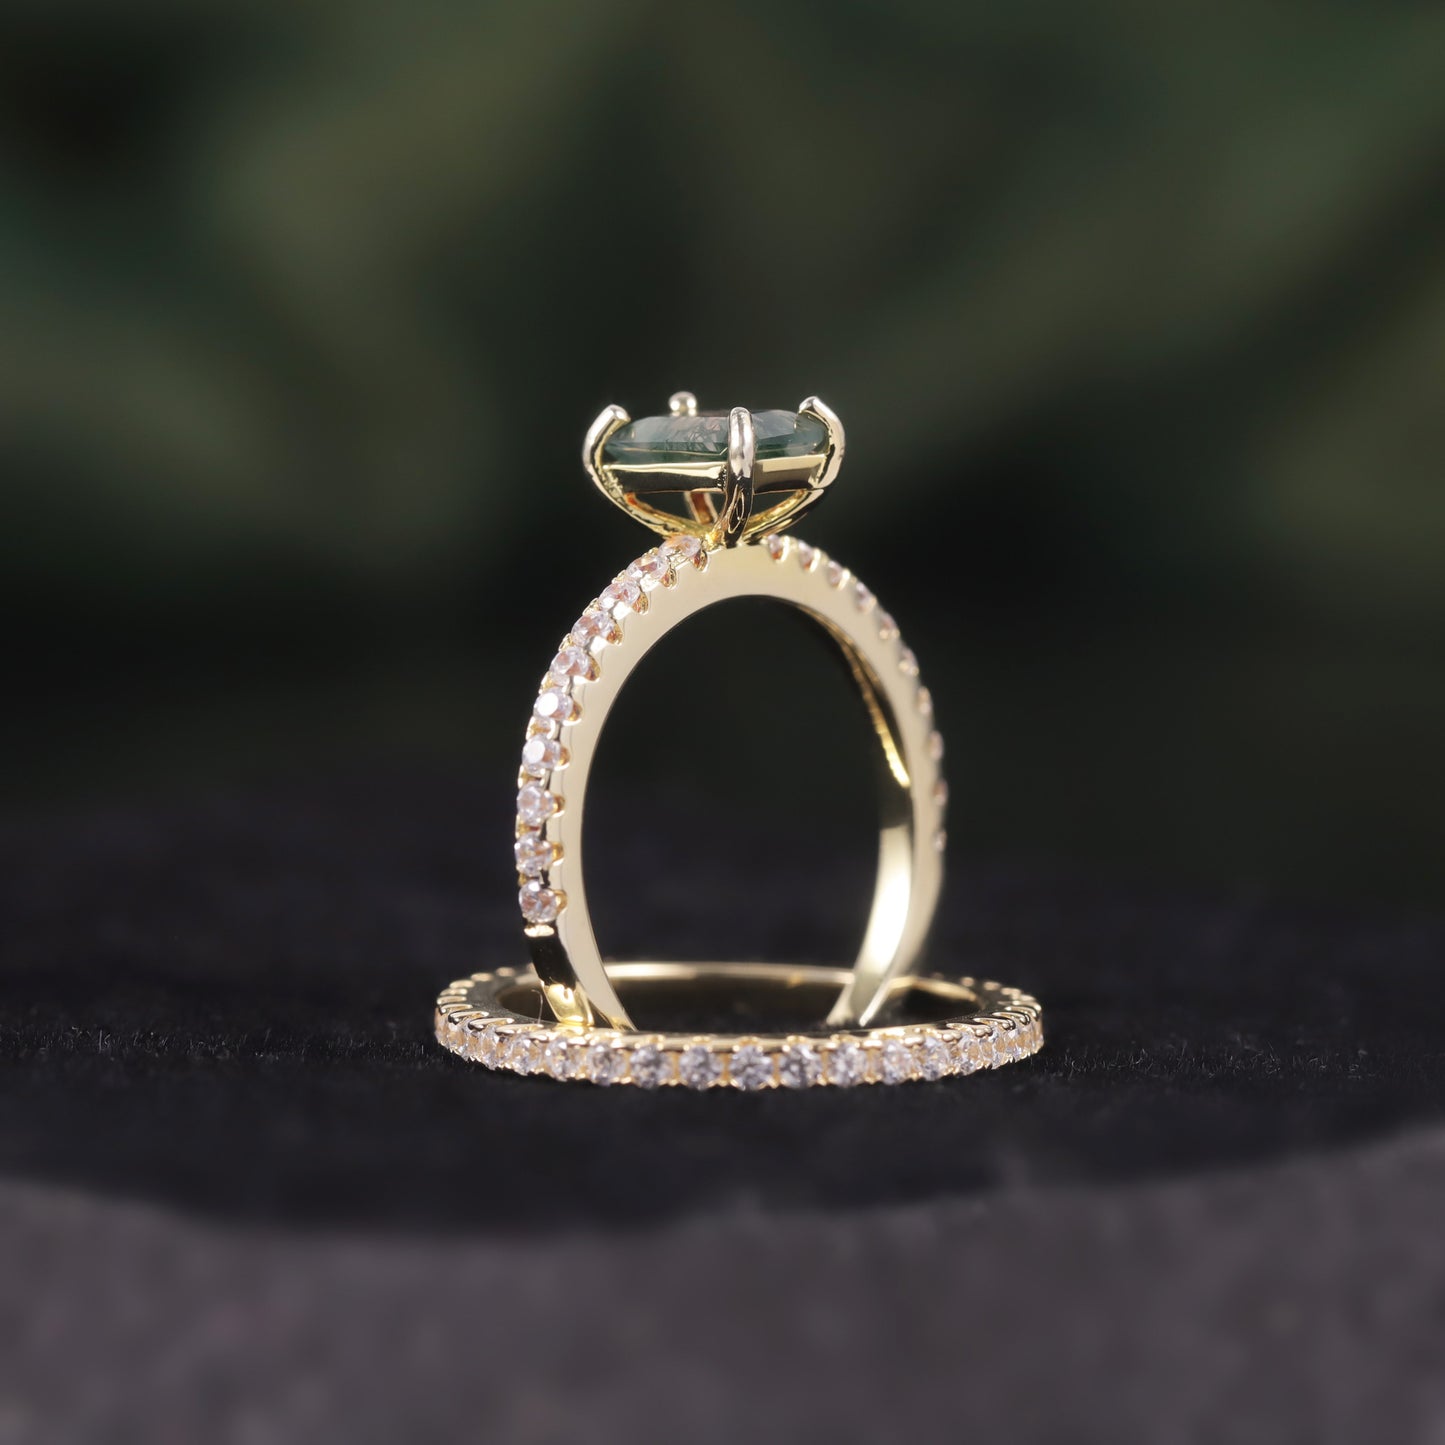 Emerald Cut Moss Agate Classic Engagement Ring Set 2pcs